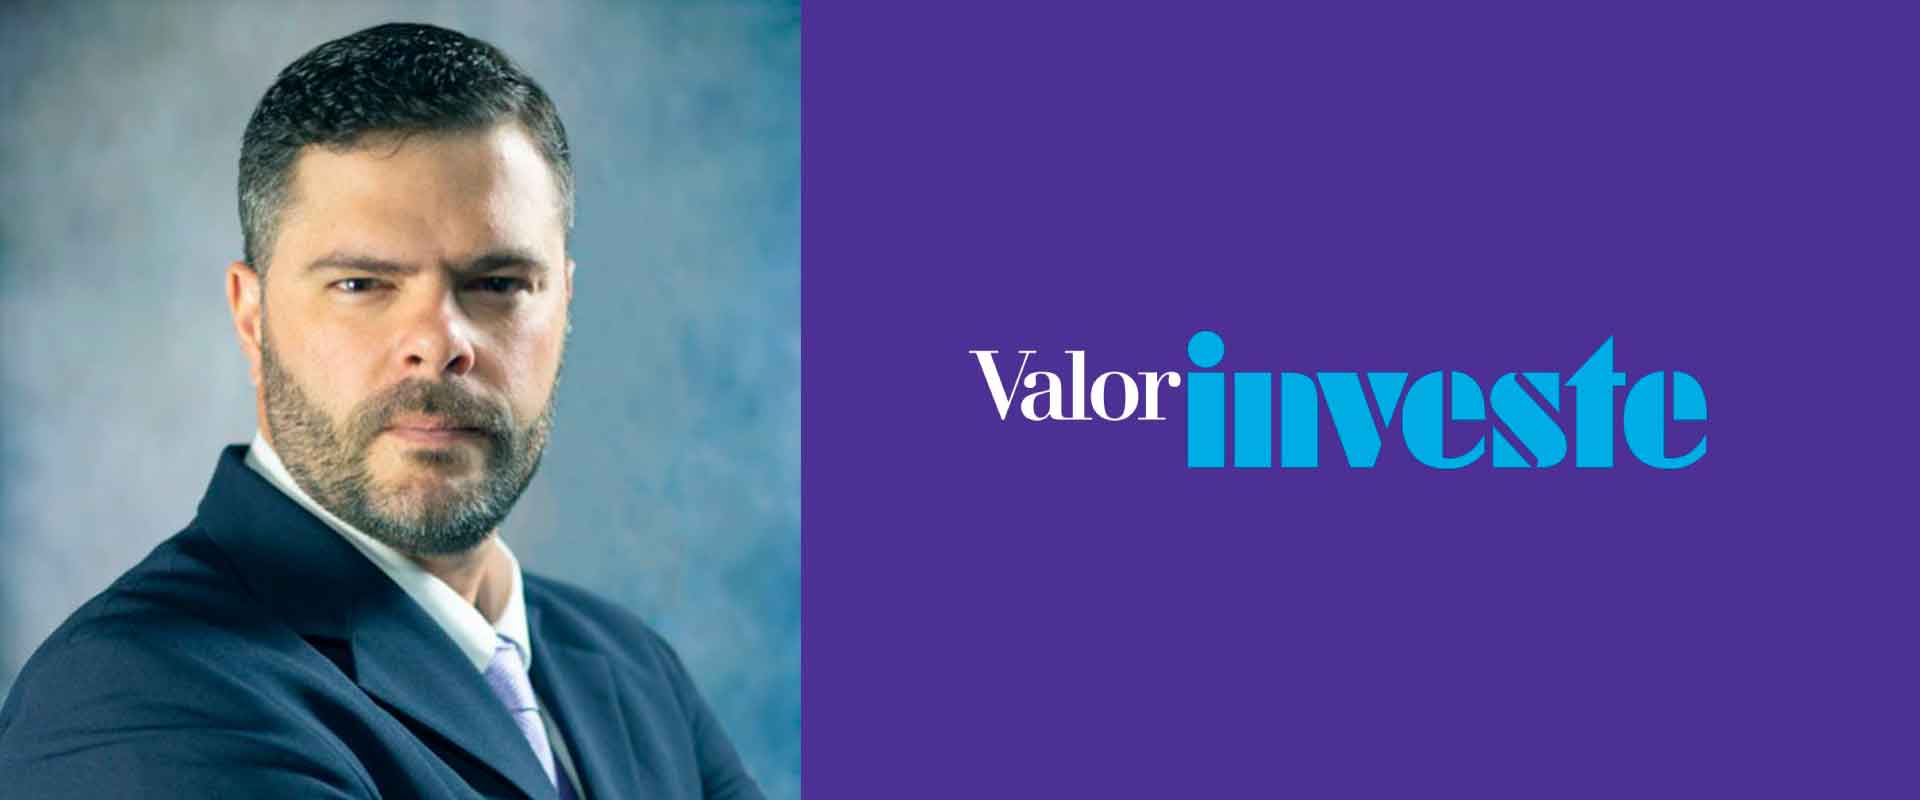 Em artigo no Valor Investe, o professor de Finanças do Coppead/UFRJ, Carlos Heitor, analisou a educação financeira universitária.